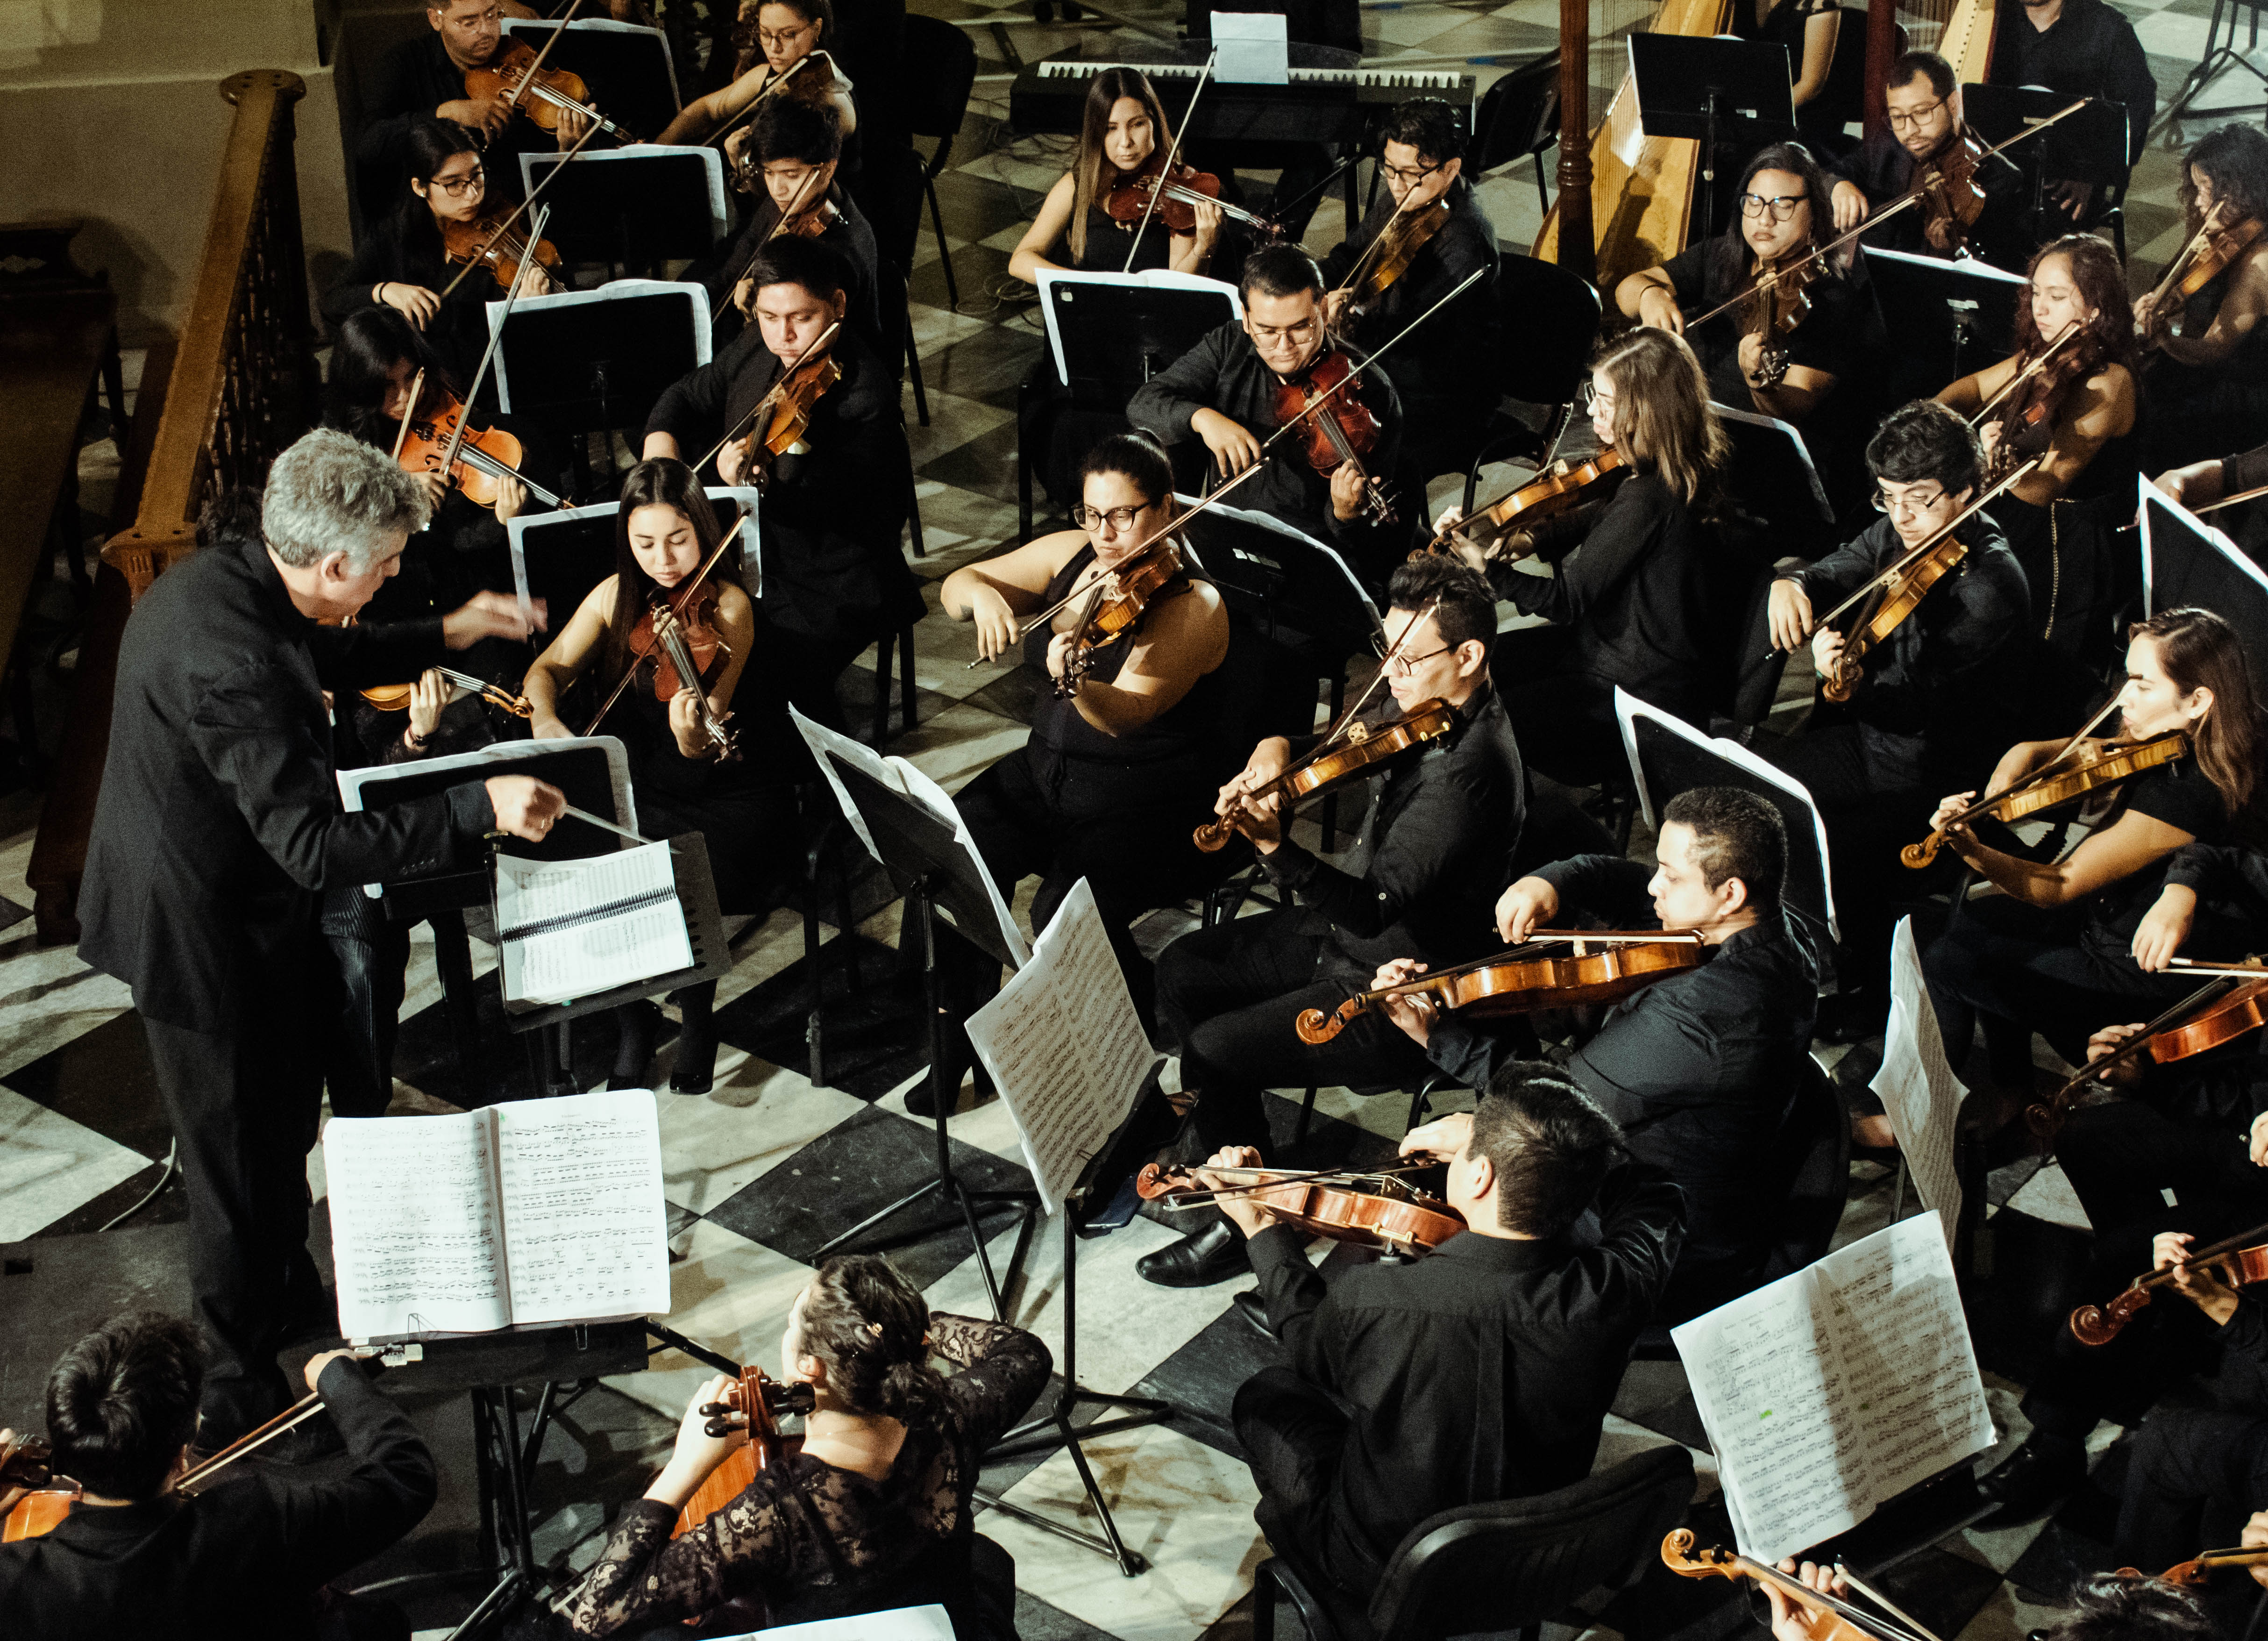 Orquesta Sinfónica Nacional Juvenil Bicentenario presenta su nueva edición del concierto “Beethoven Cinco” en el Teatro Municipal de Lima